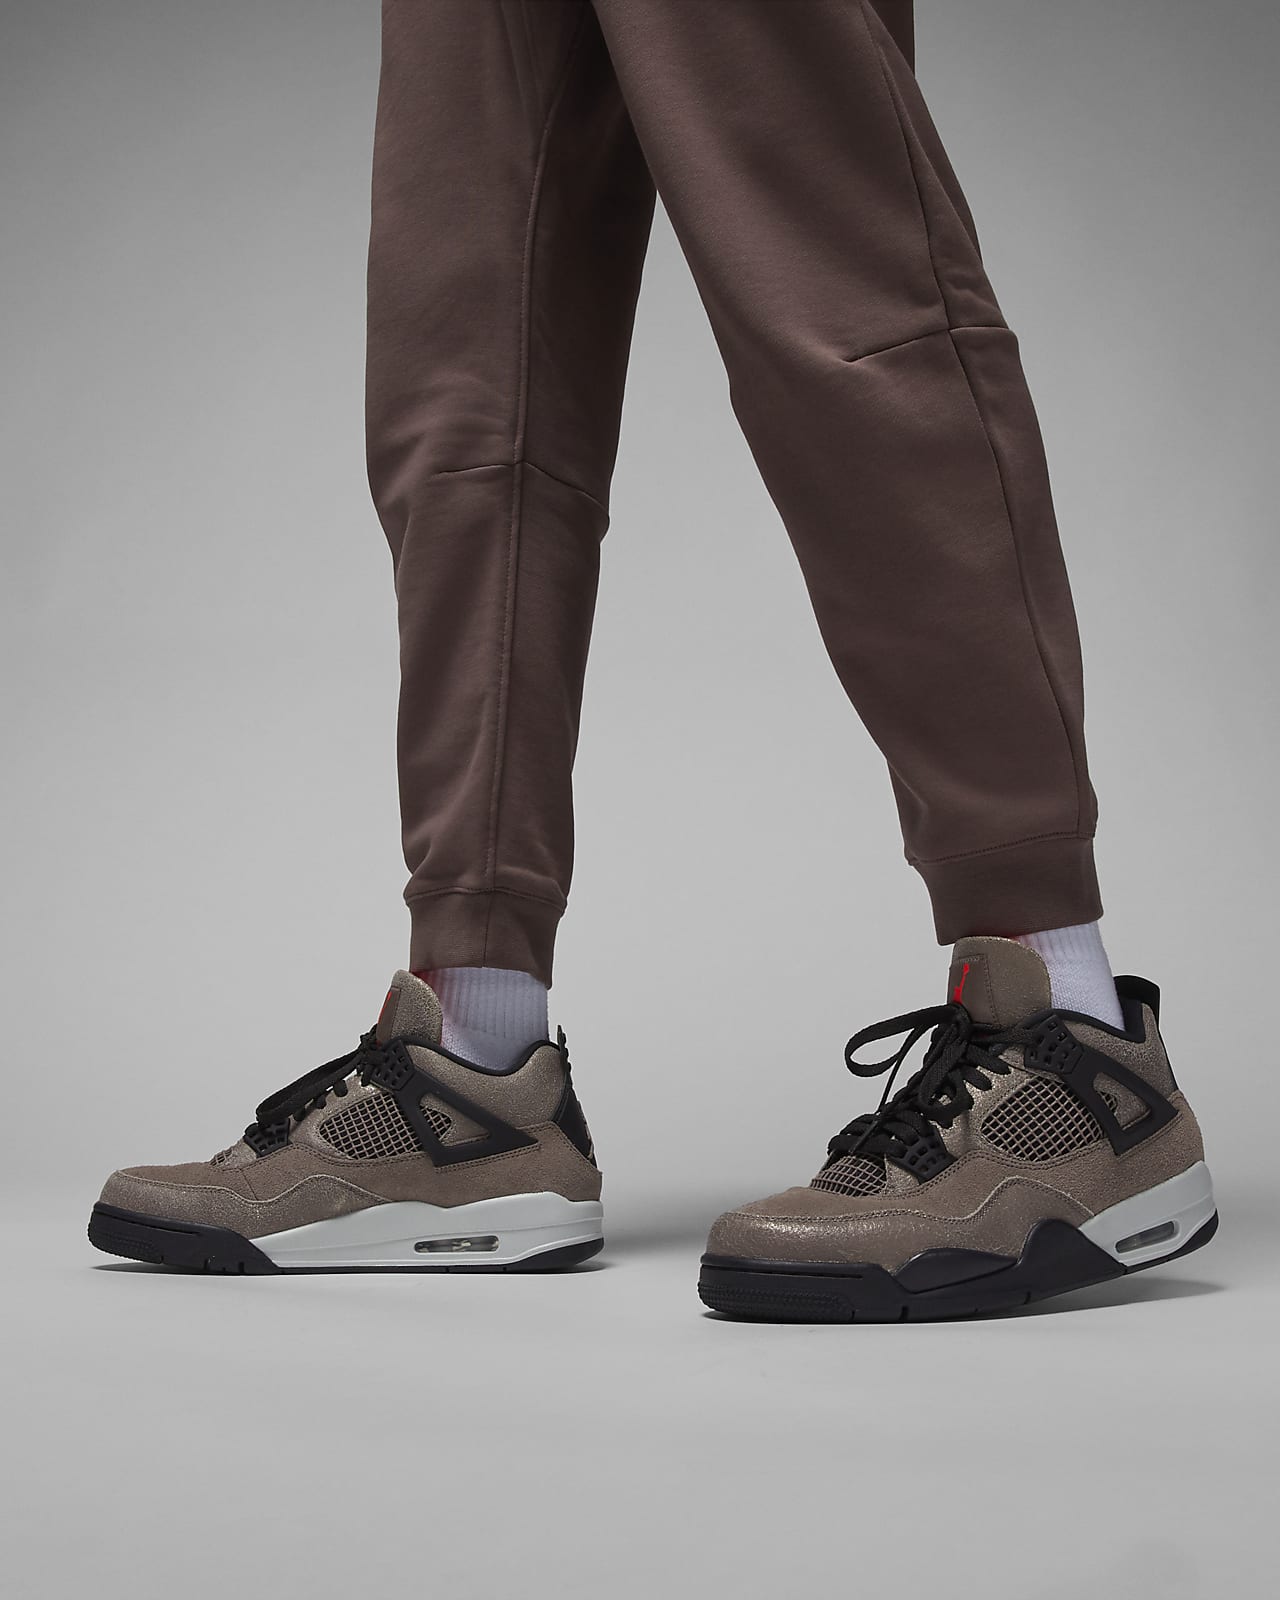 Air Jordan 5 Retro Low PSG Men's Shoes. Nike LU